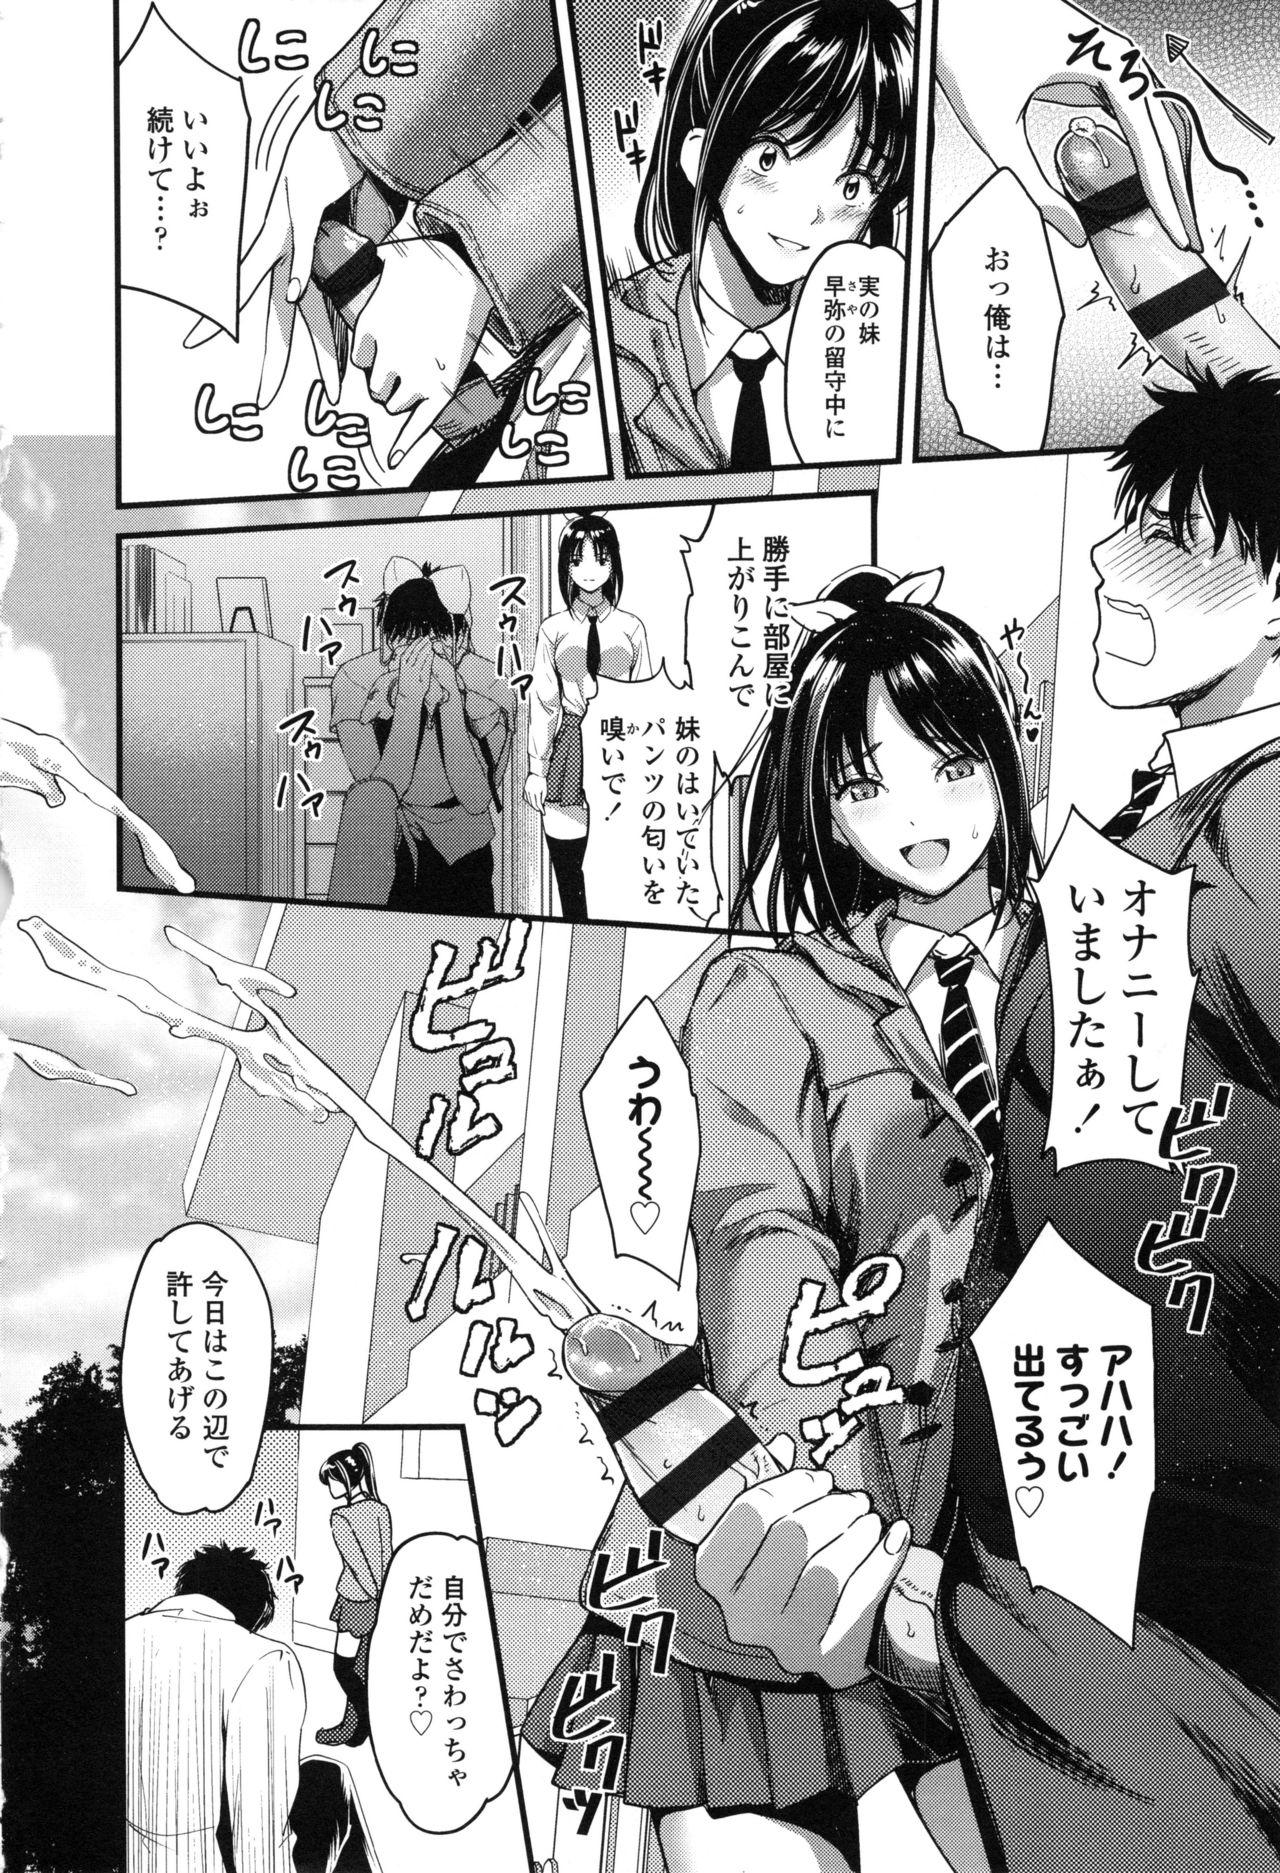 Seifuku no Mama Aishinasai! - Love in school uniform 25